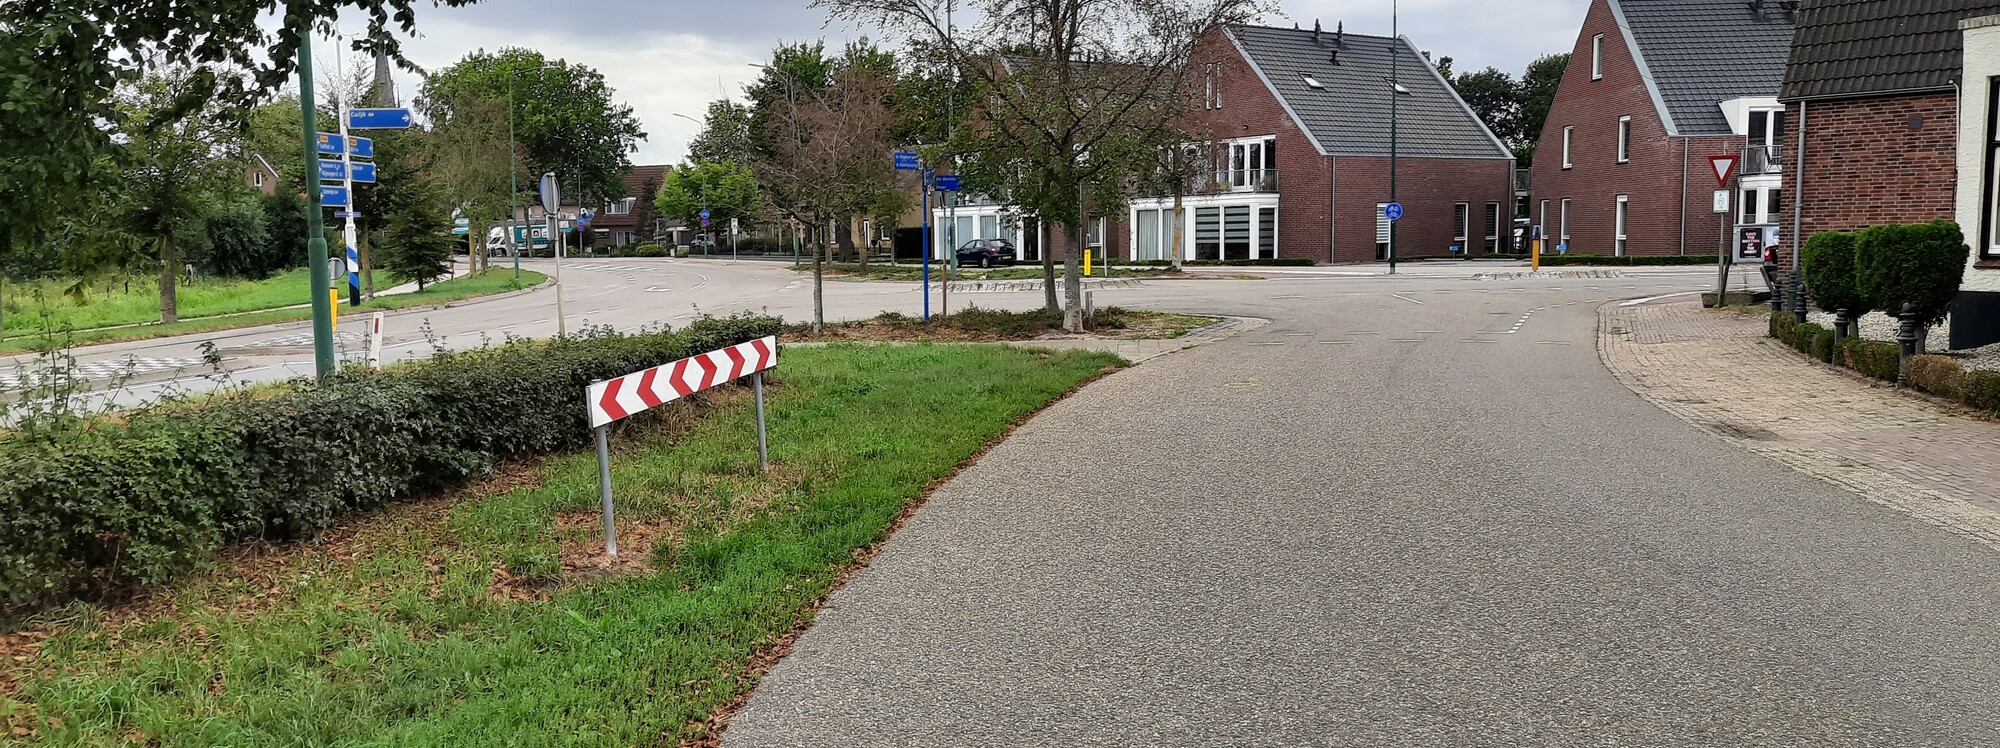 Aanleg rotonde Kerkstraat en aanpassing kruising Sint Hubertseweg